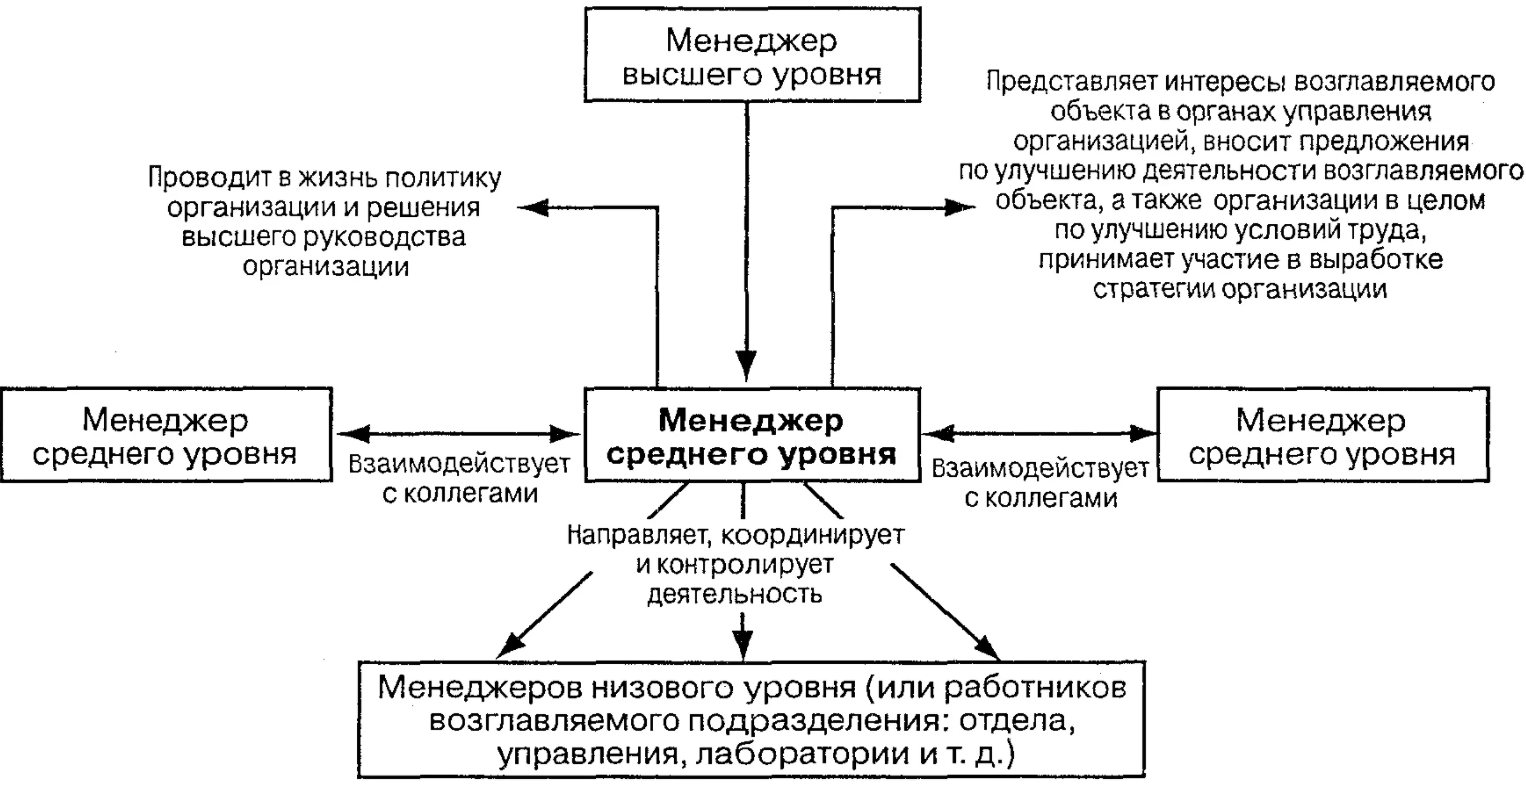 Особенности современного российского менеджмента - Развитие понимания менеджмента